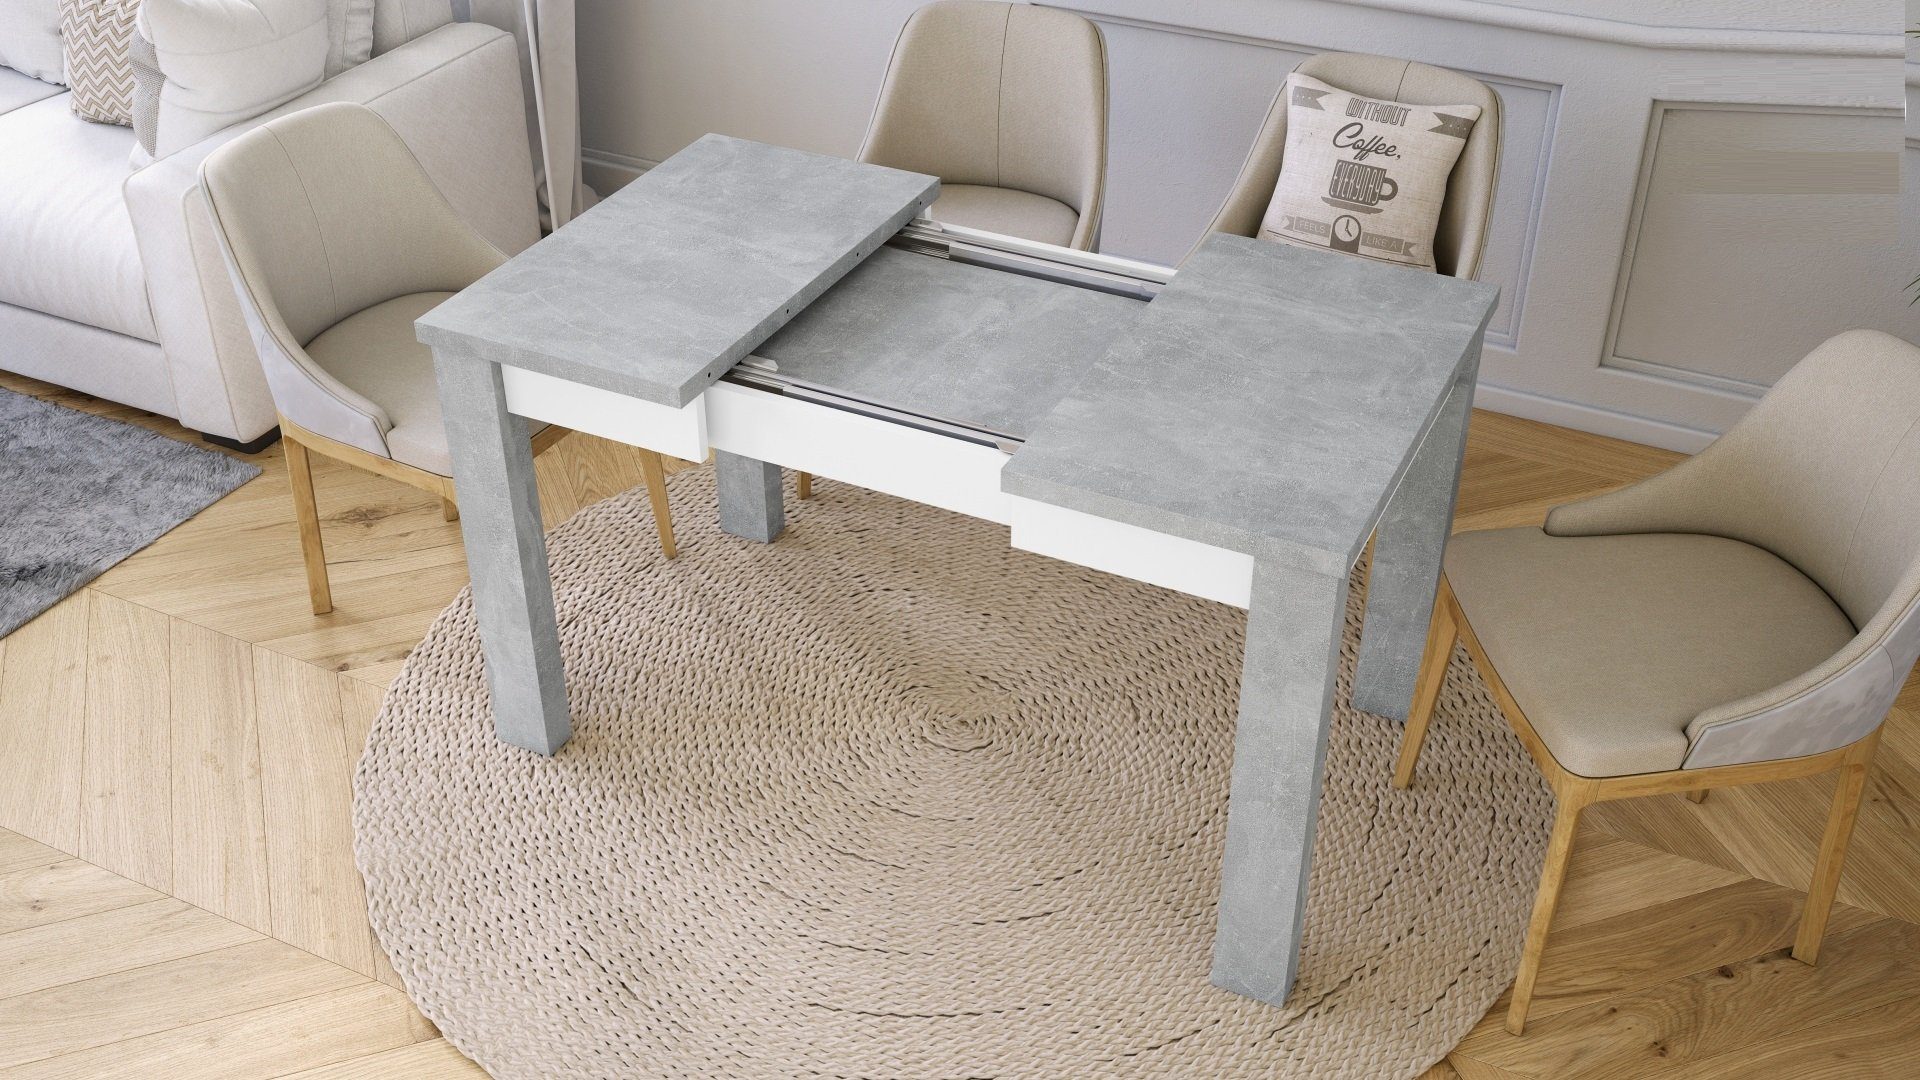 130 cm designimpex 85 Tisch Esstisch / bis Esstisch ausziehbar Beton matt Weiß Design Fonte